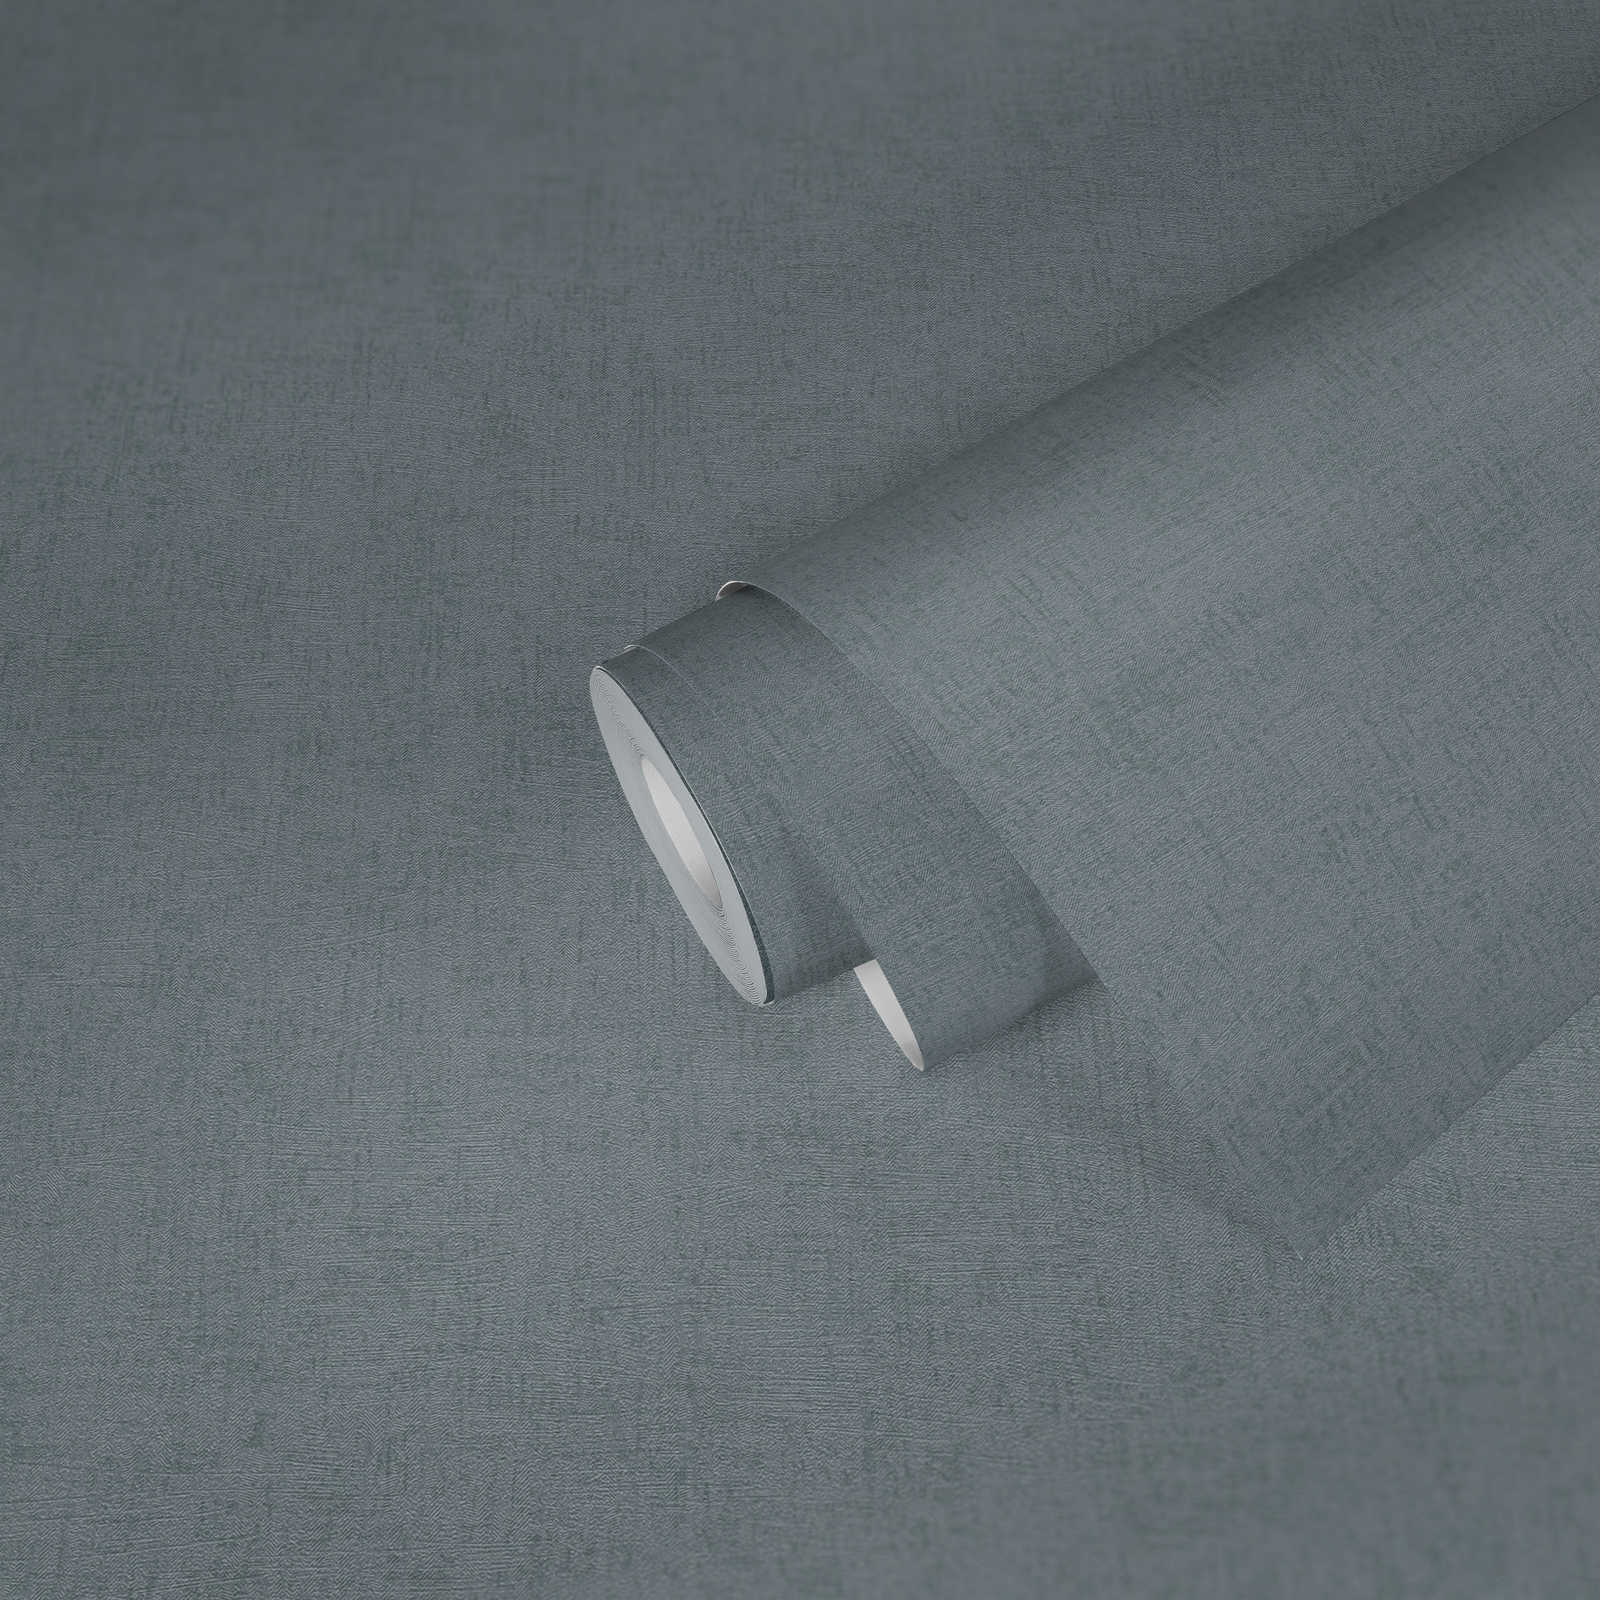             Tapete Grün-Grau mit Strukturprägung & Glanz-Effekt – Grün, Metallic
        